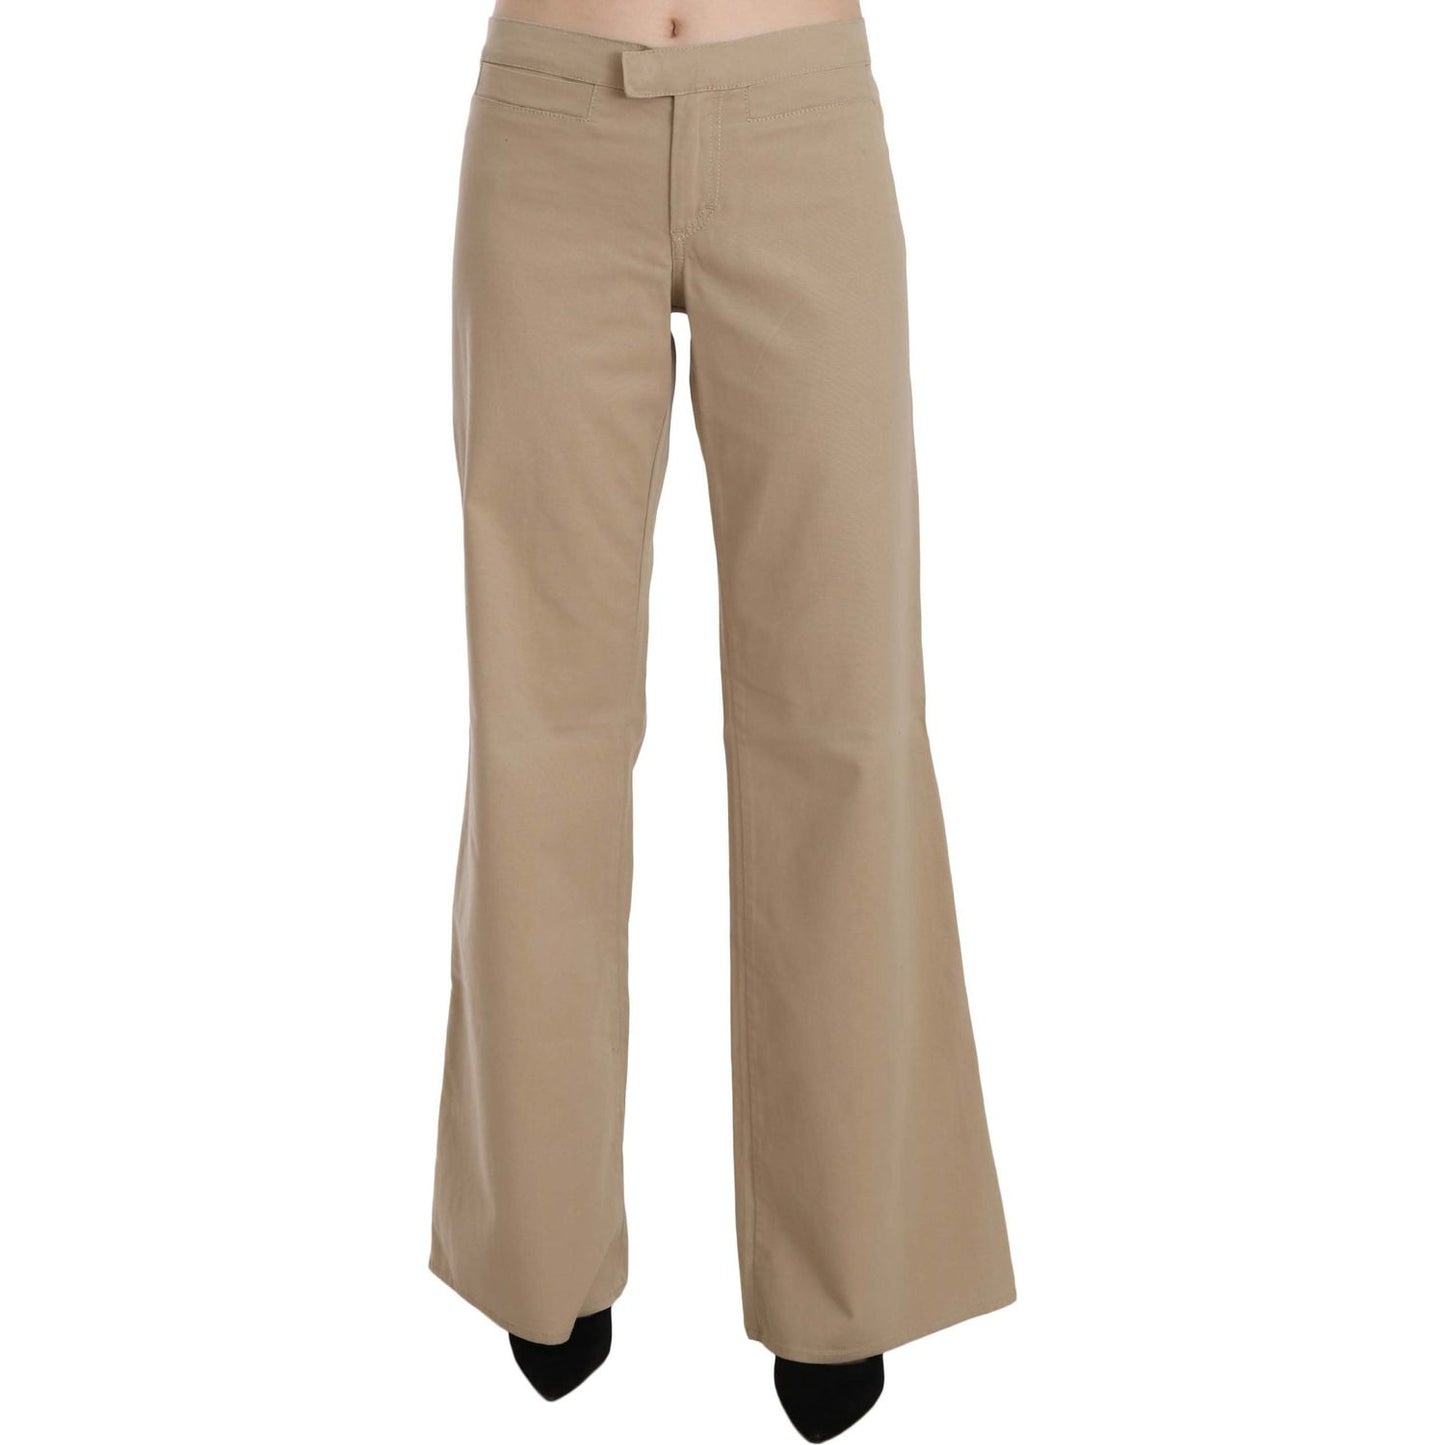 Just Cavalli Beige Mid Waist Flared Luxury Trousers beige-cotton-mid-waist-flared-trousers-pants Jeans & Pants IMG_6092-scaled-c2908824-cbb.jpg